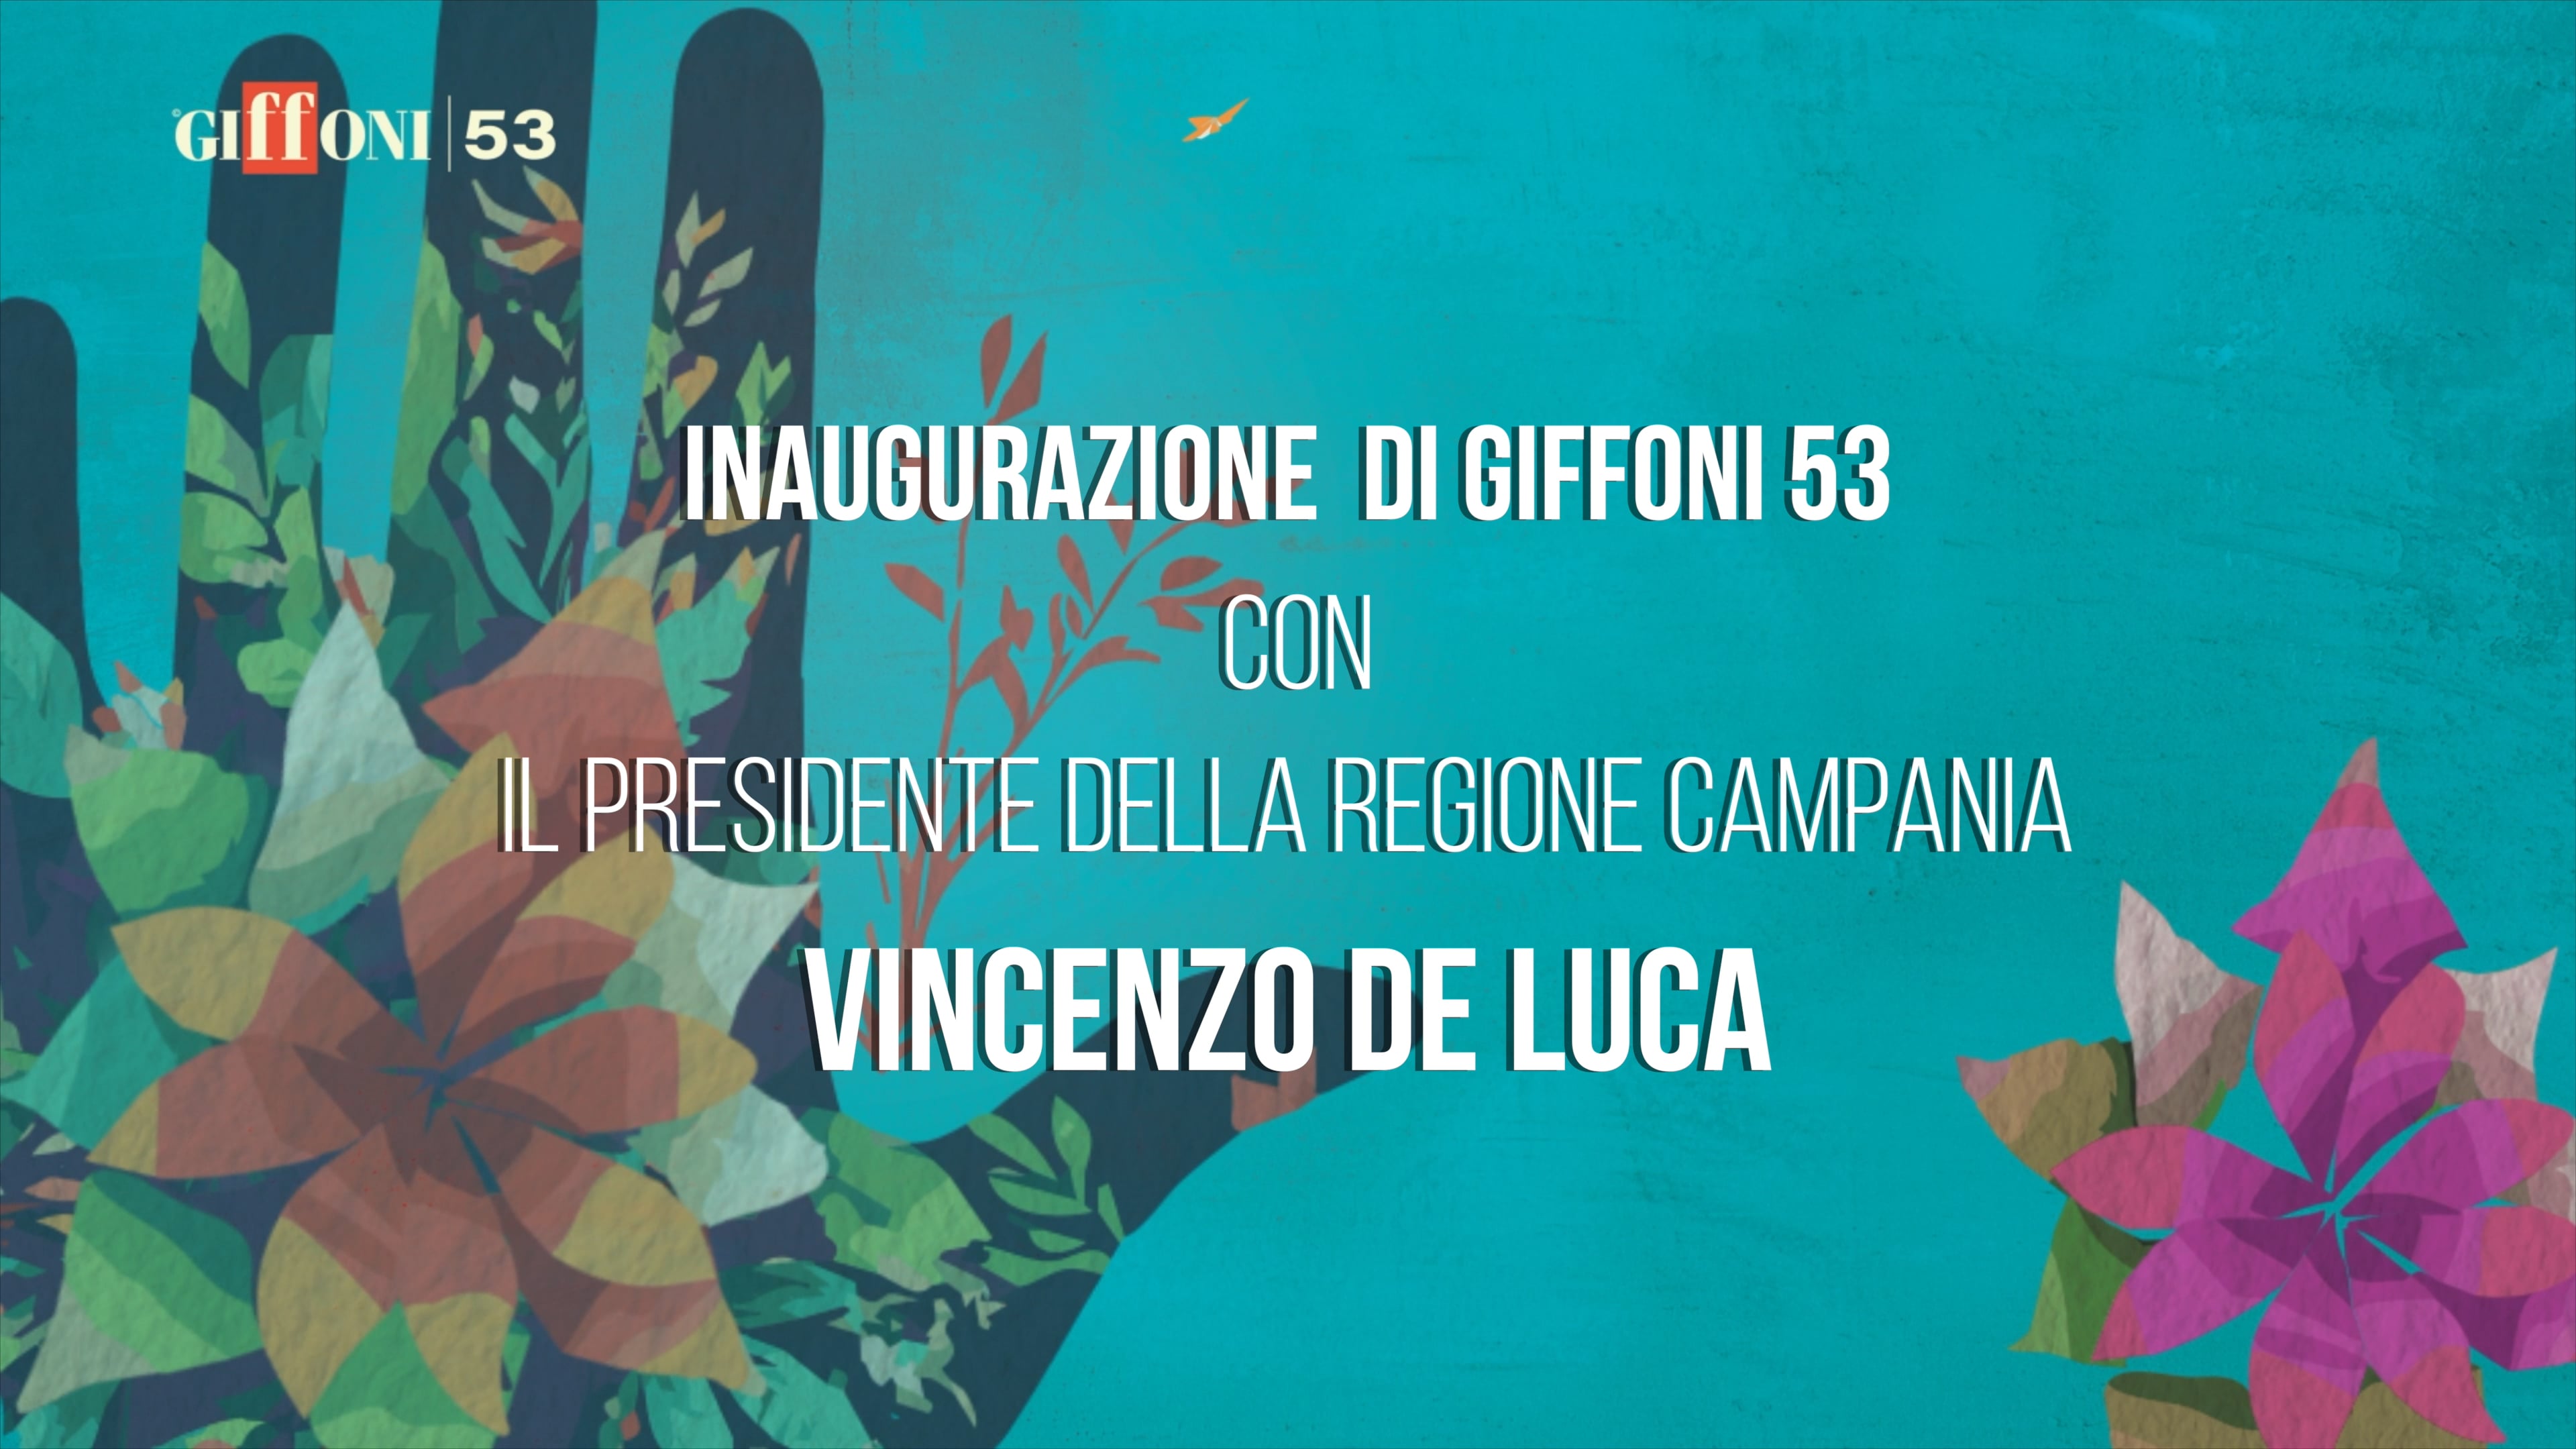 Inaugurazione #Giffoni53 con il Presidente della Regione Campania ...